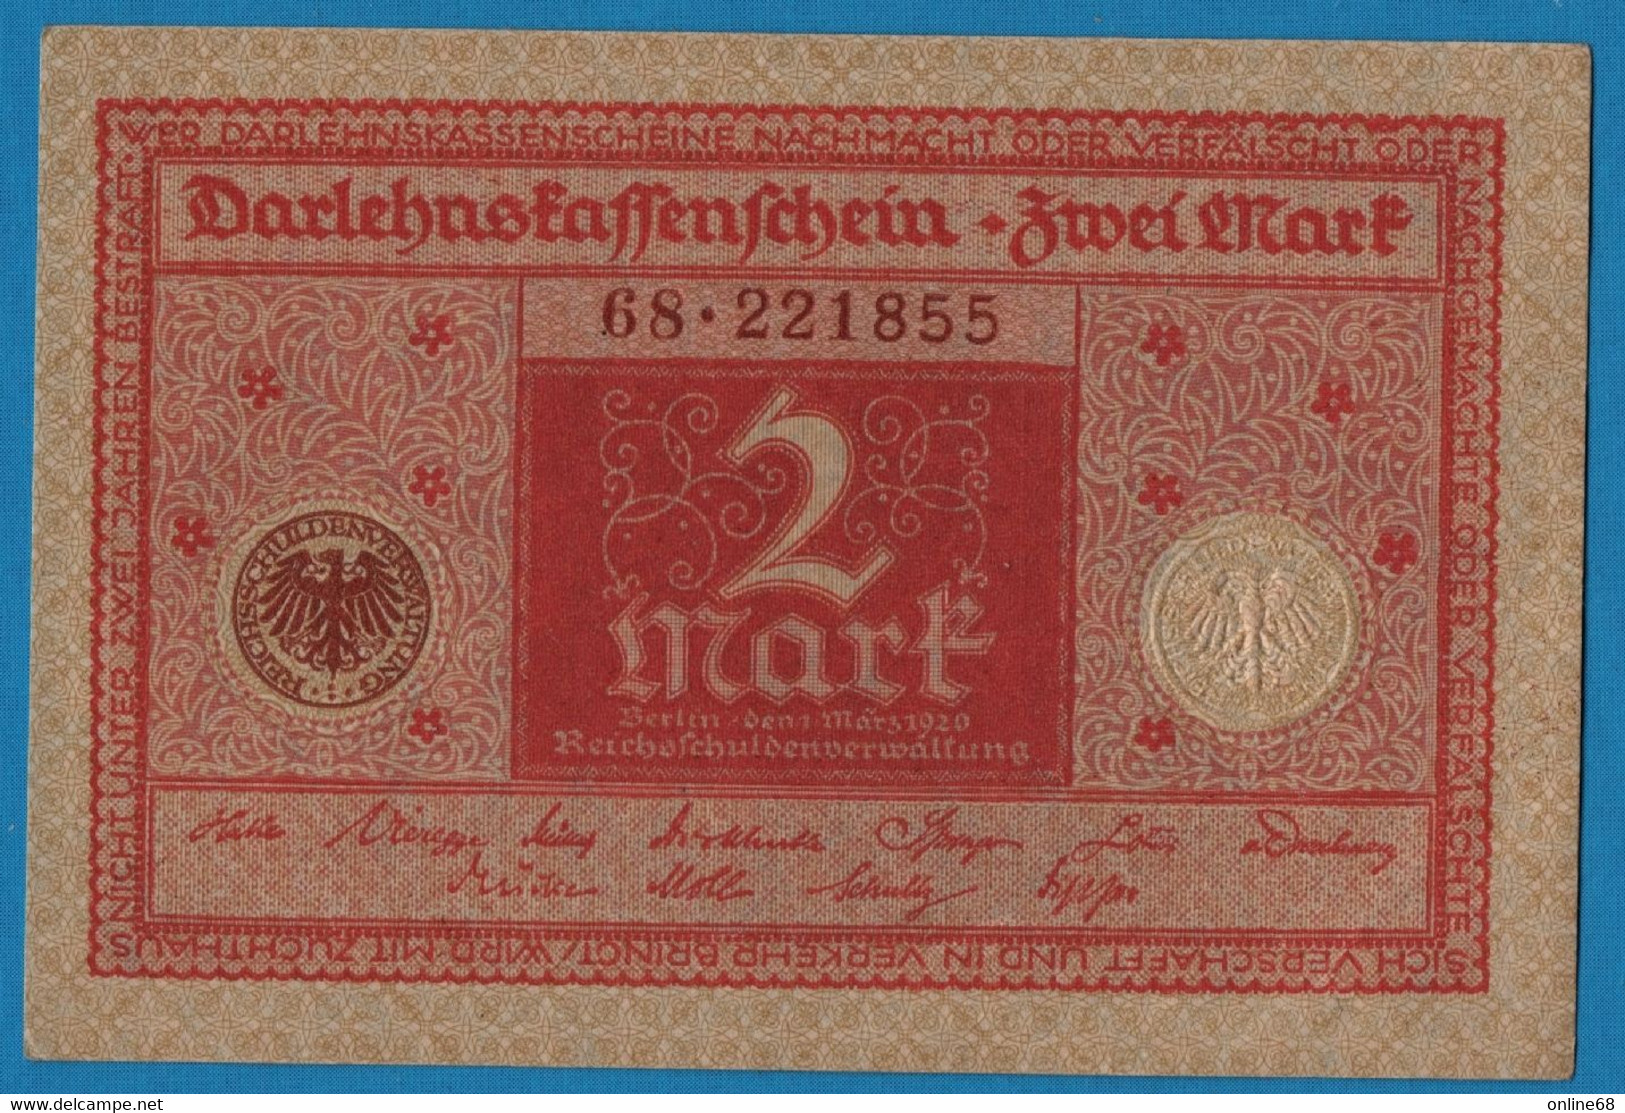 DEUTSCHES REICH 2 MARK 01.03.1920  # 68.221855 P# 59  DARLEHENSKASSENSCHEIN - Reichsschuldenverwaltung